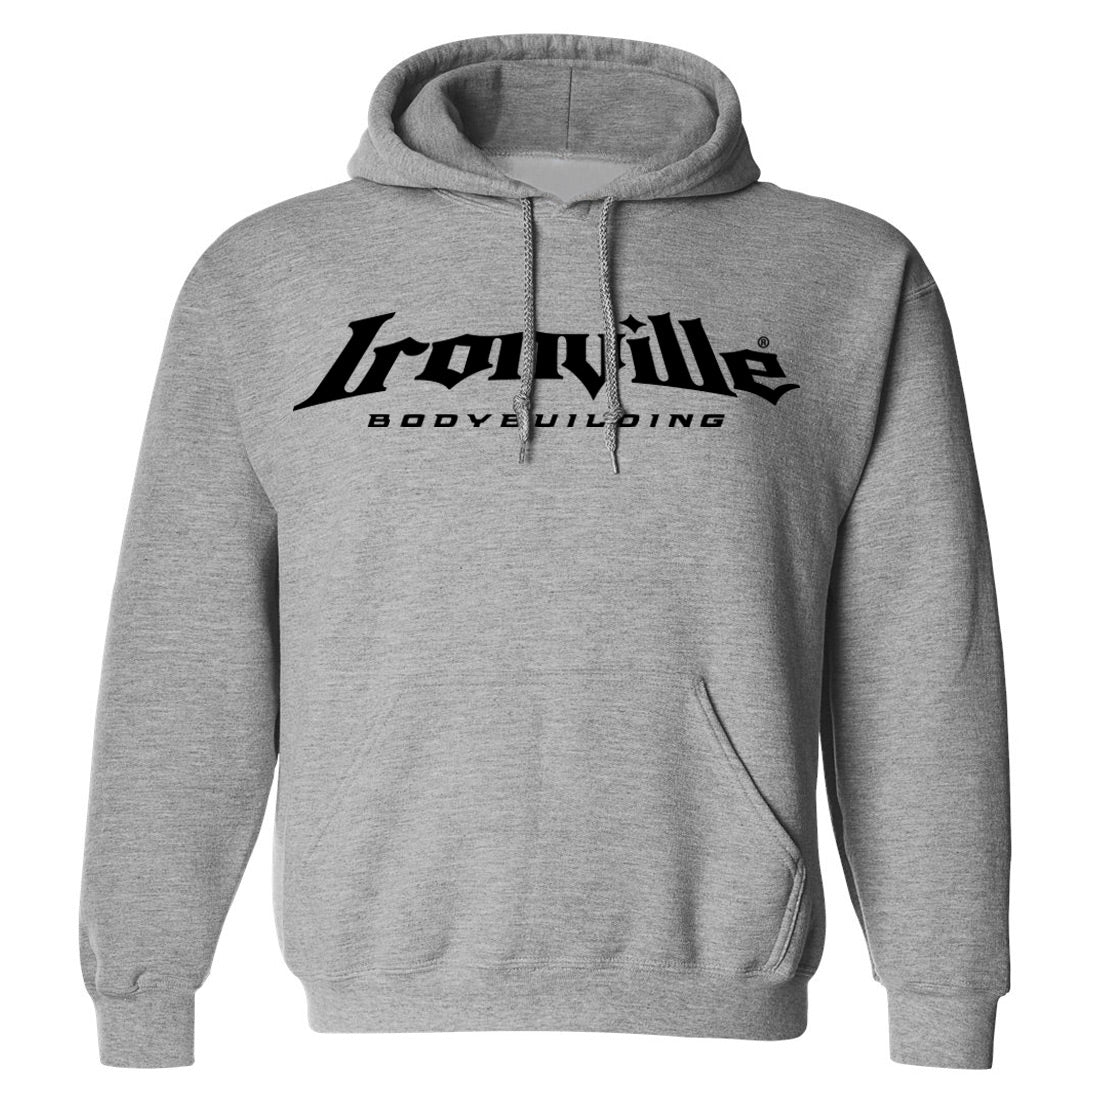 Ironville BODYBUILDING Pullover Hoodie Sweatshirt